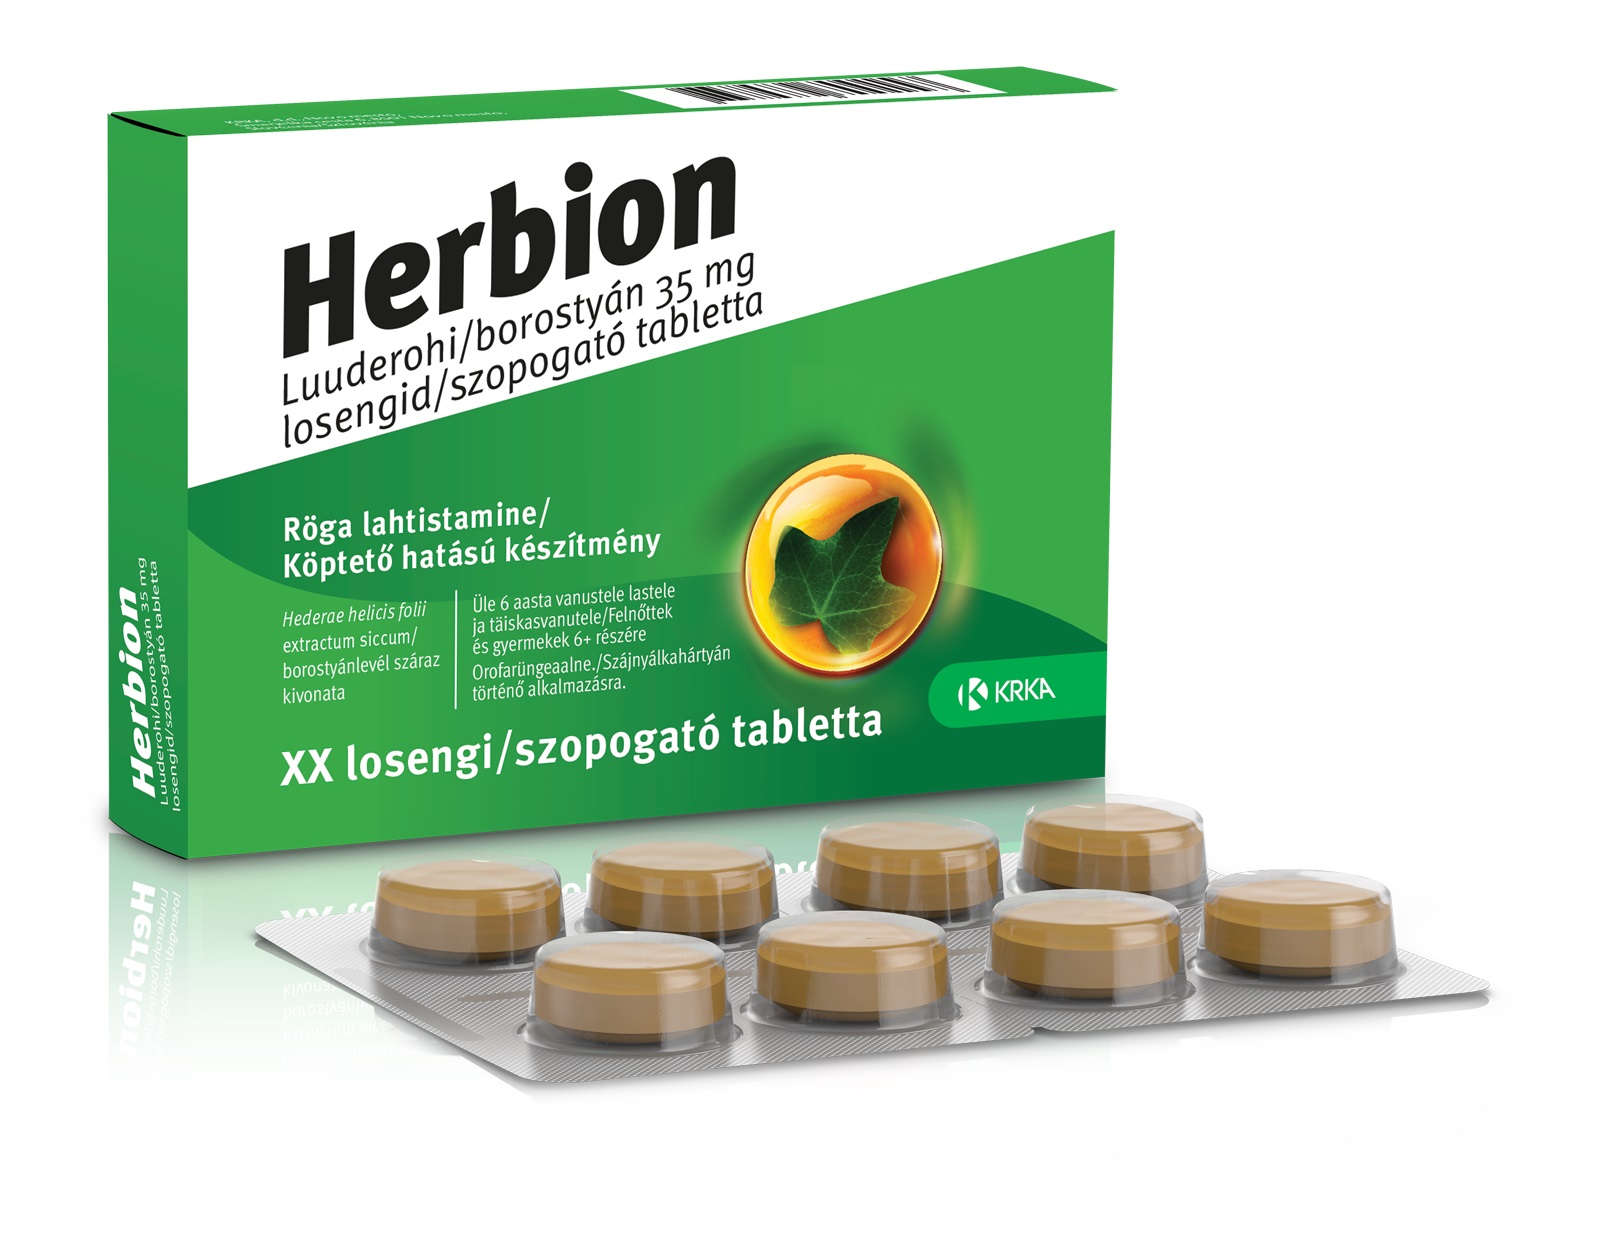 Herbion borostyán 35mg szopogató tabletta